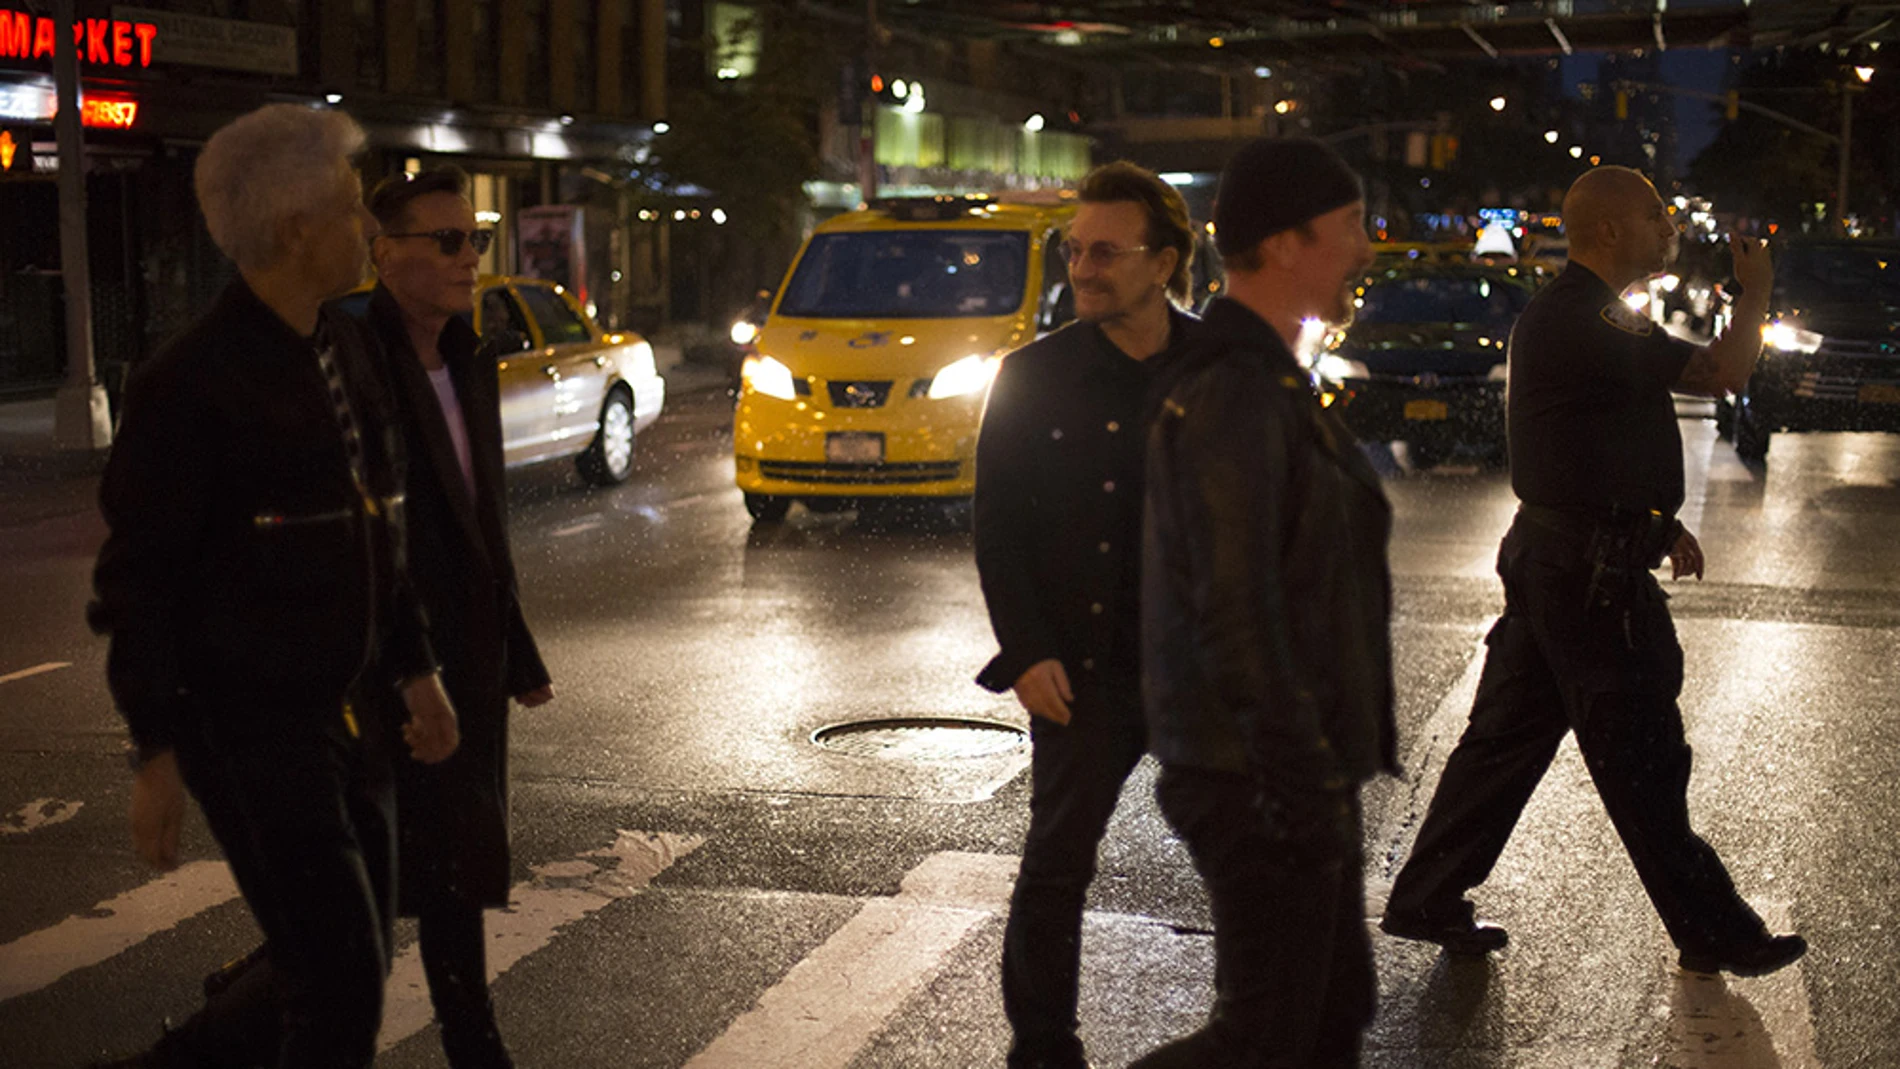 La banda irlandesa U2 tendrá su propia serie de televisión en Netflix.